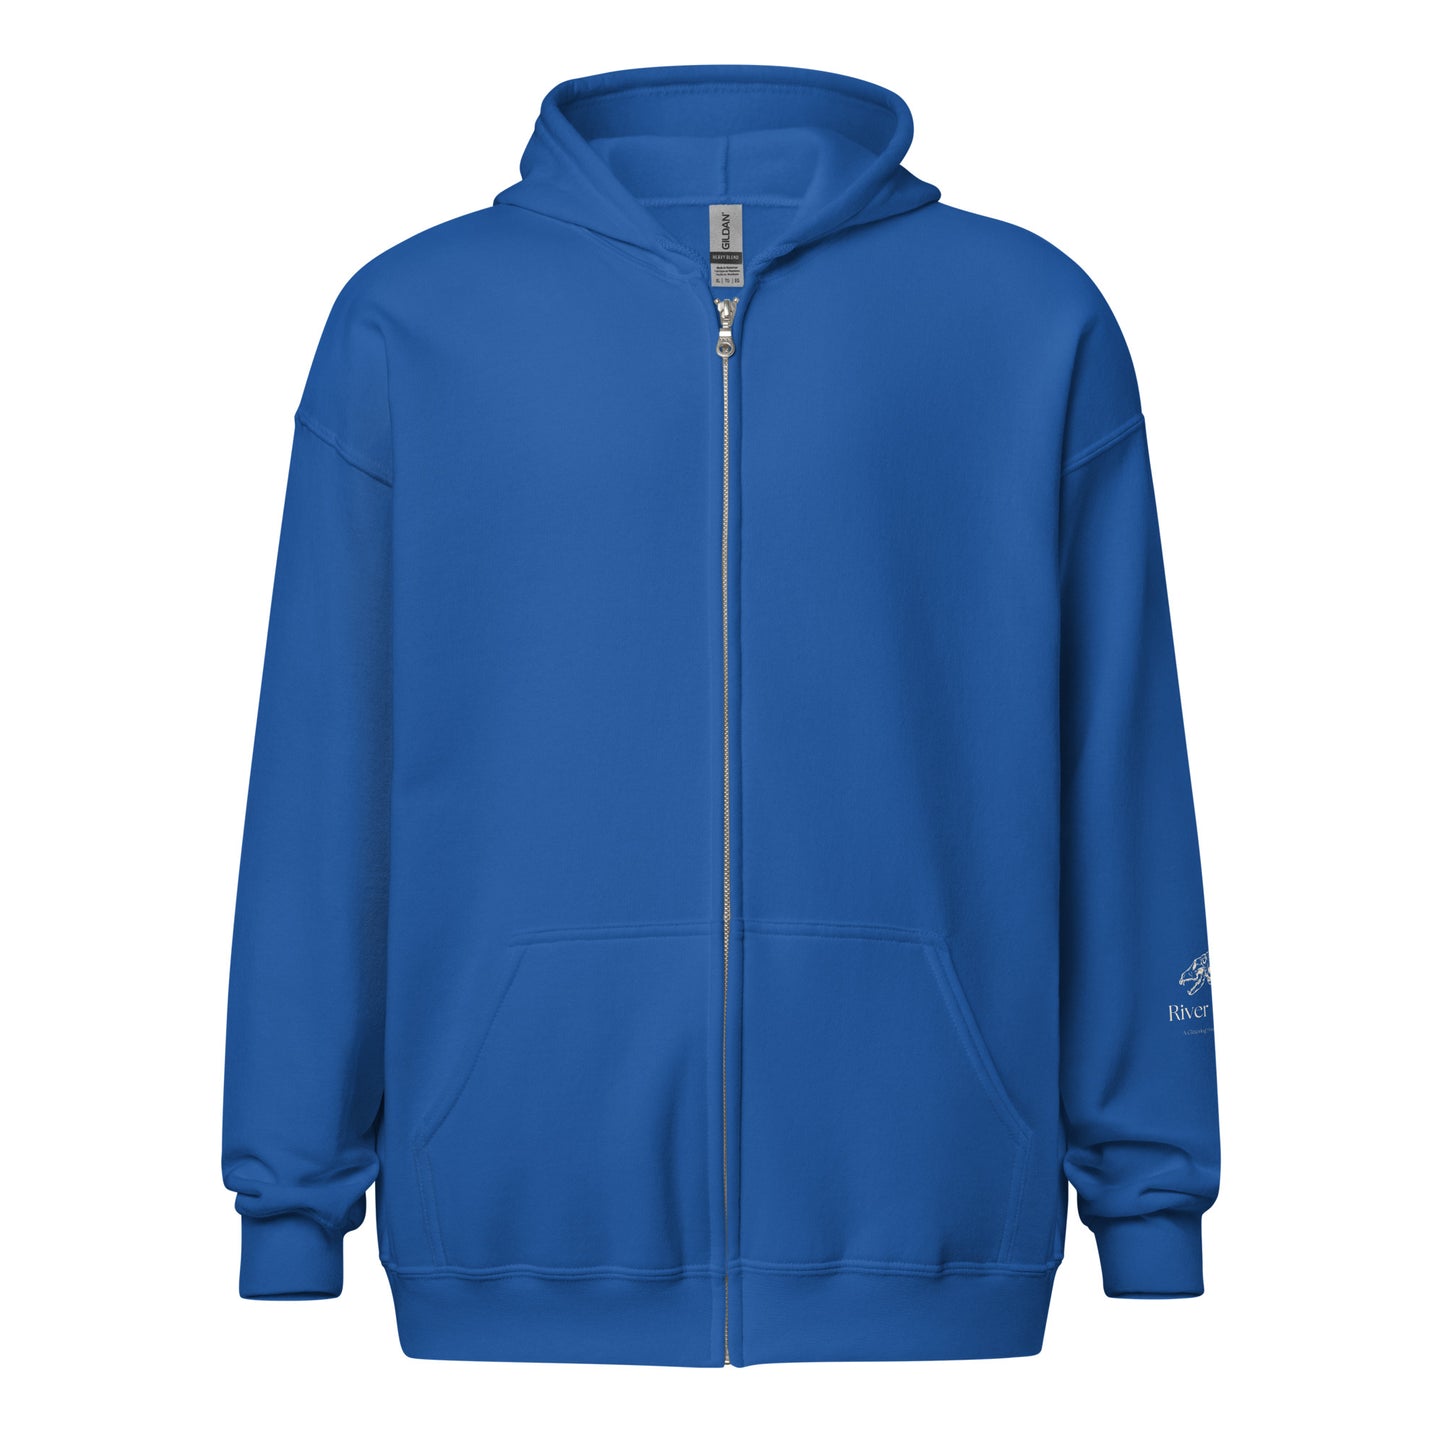 Team Bear Unisex heavy blend zip hoodie